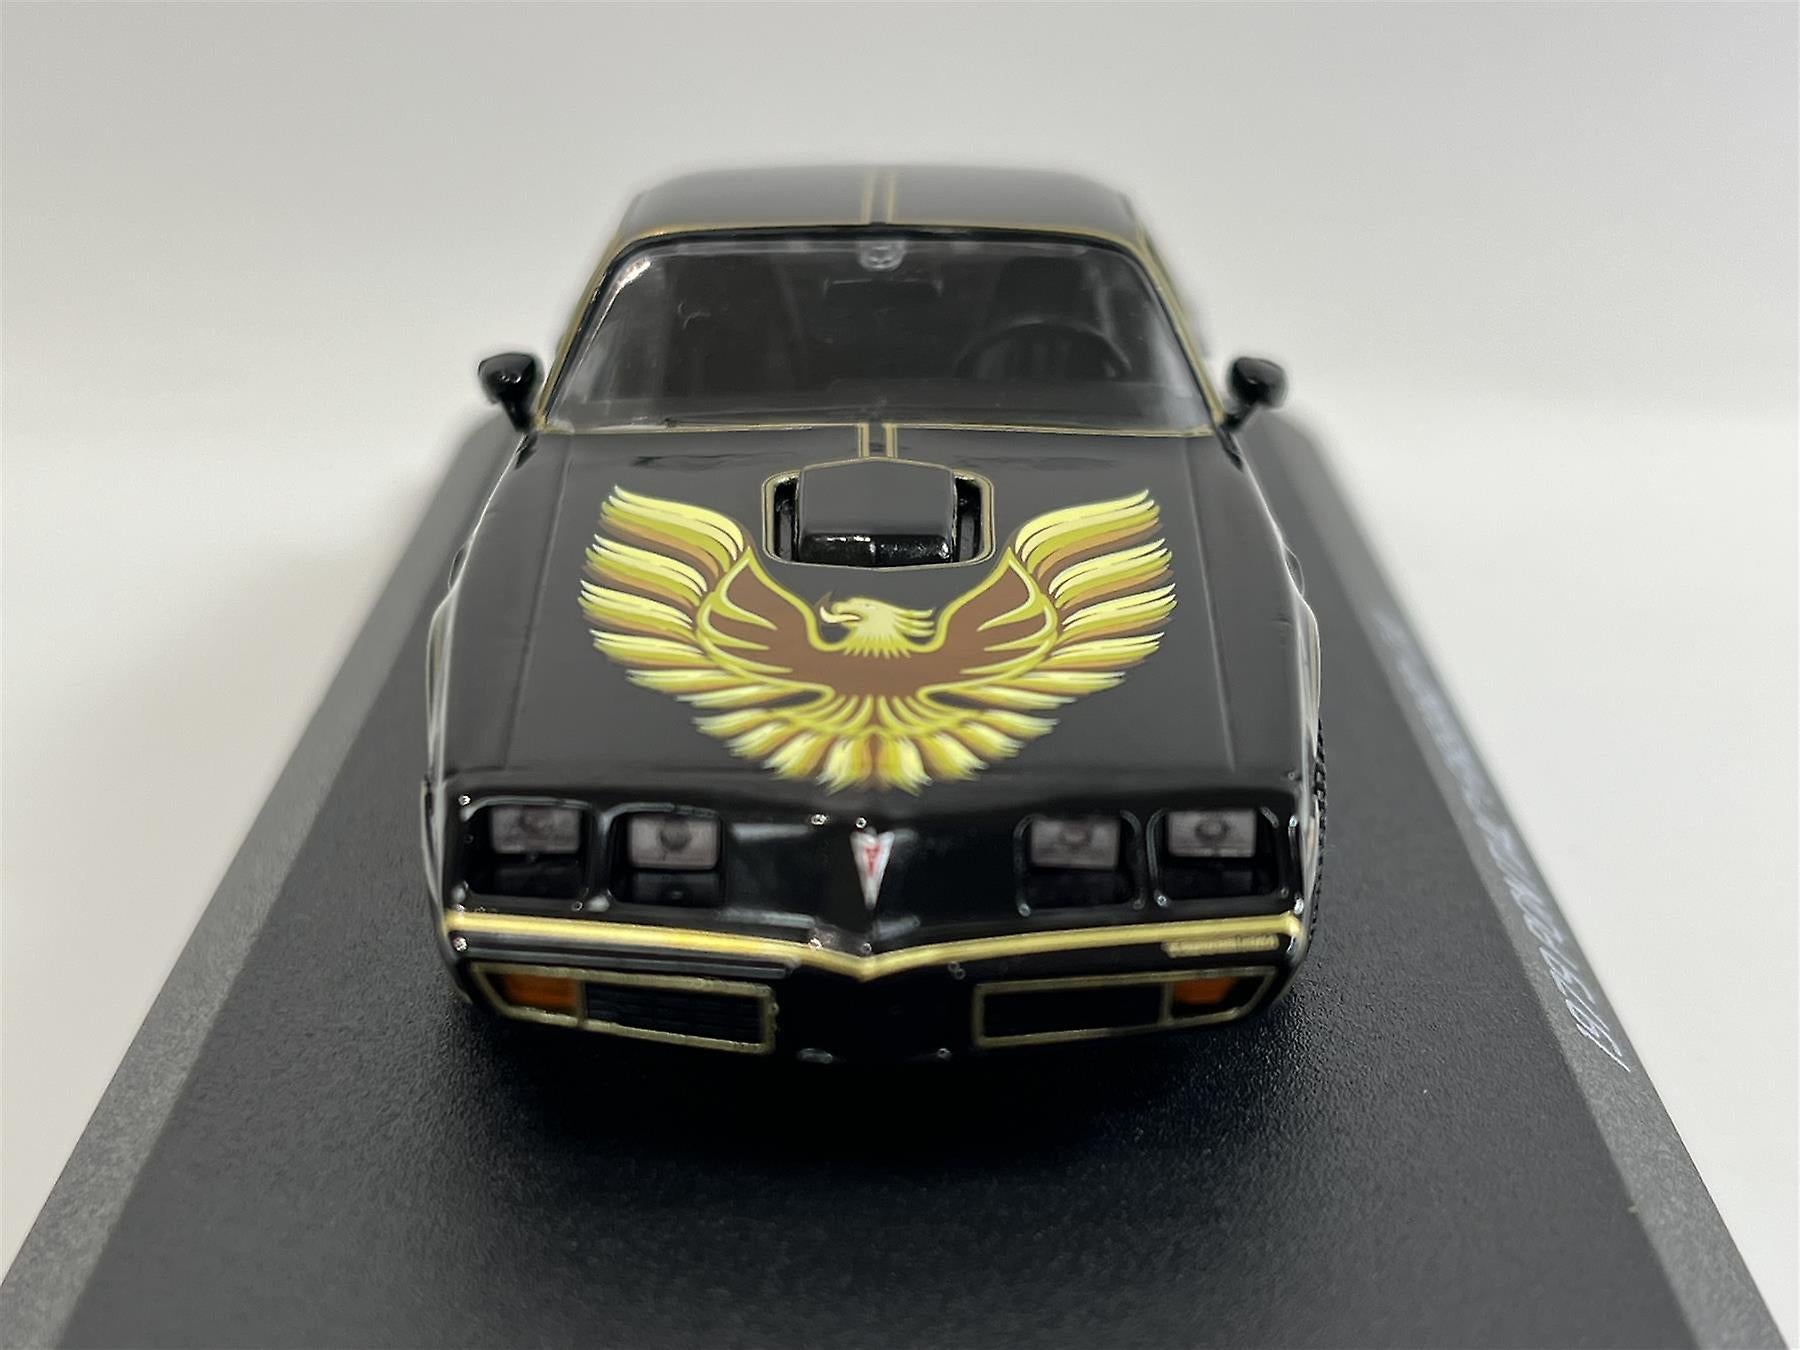 Pontiac Firebird 1979 Rocky II 1:43 Scale Die Cast